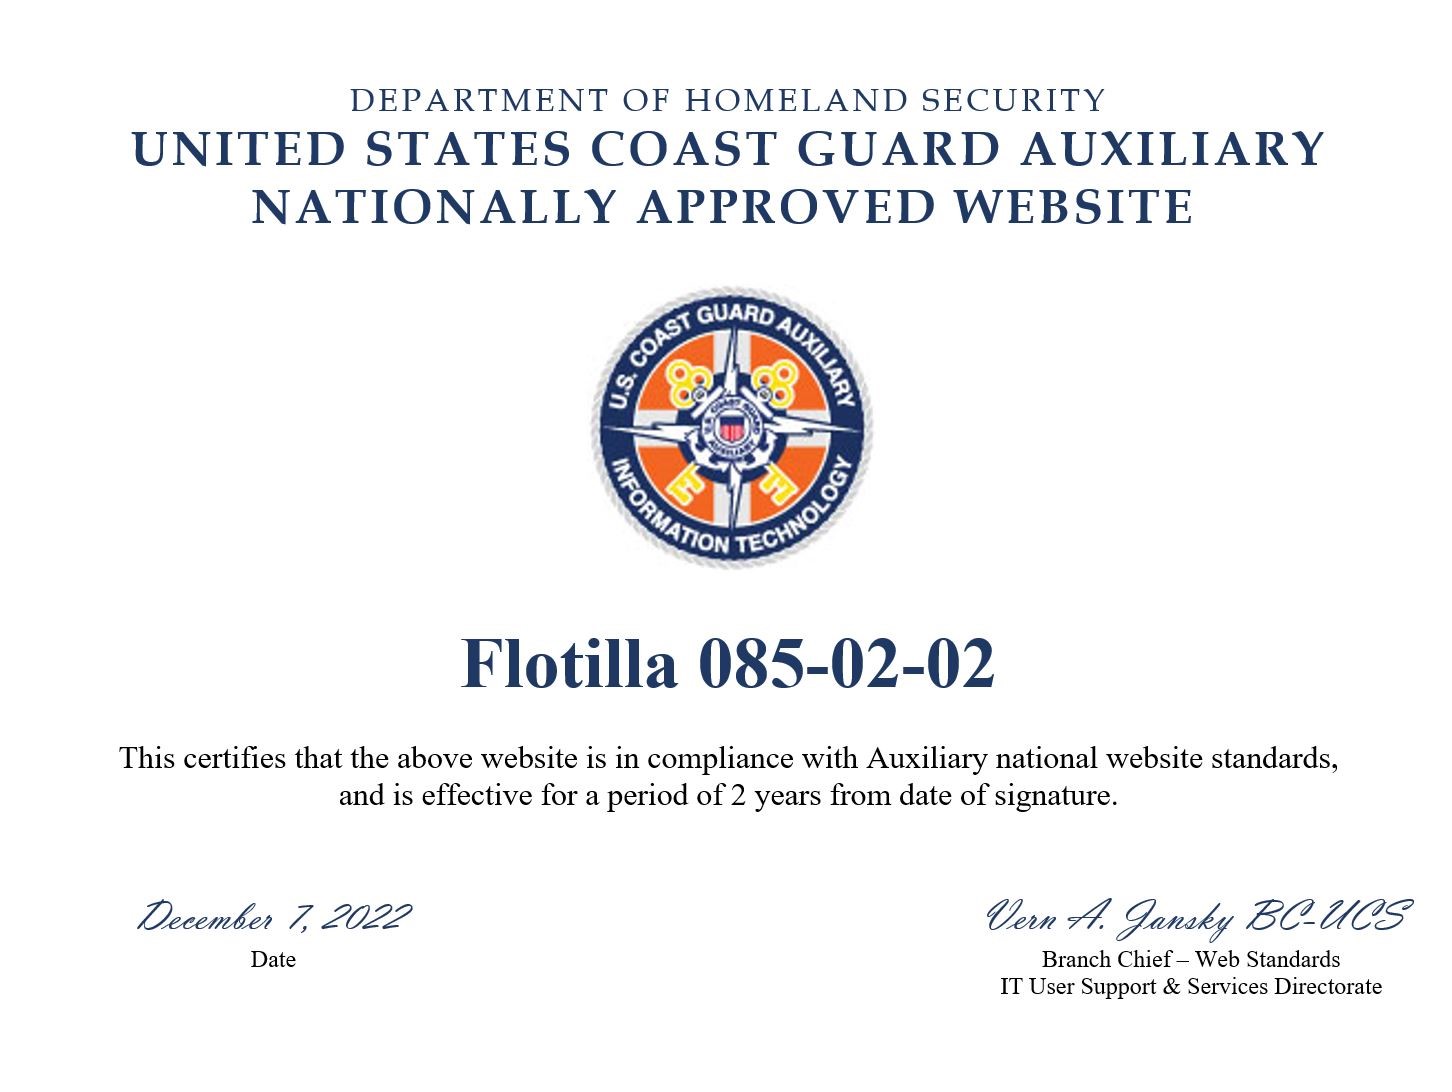 Website compliance certificate